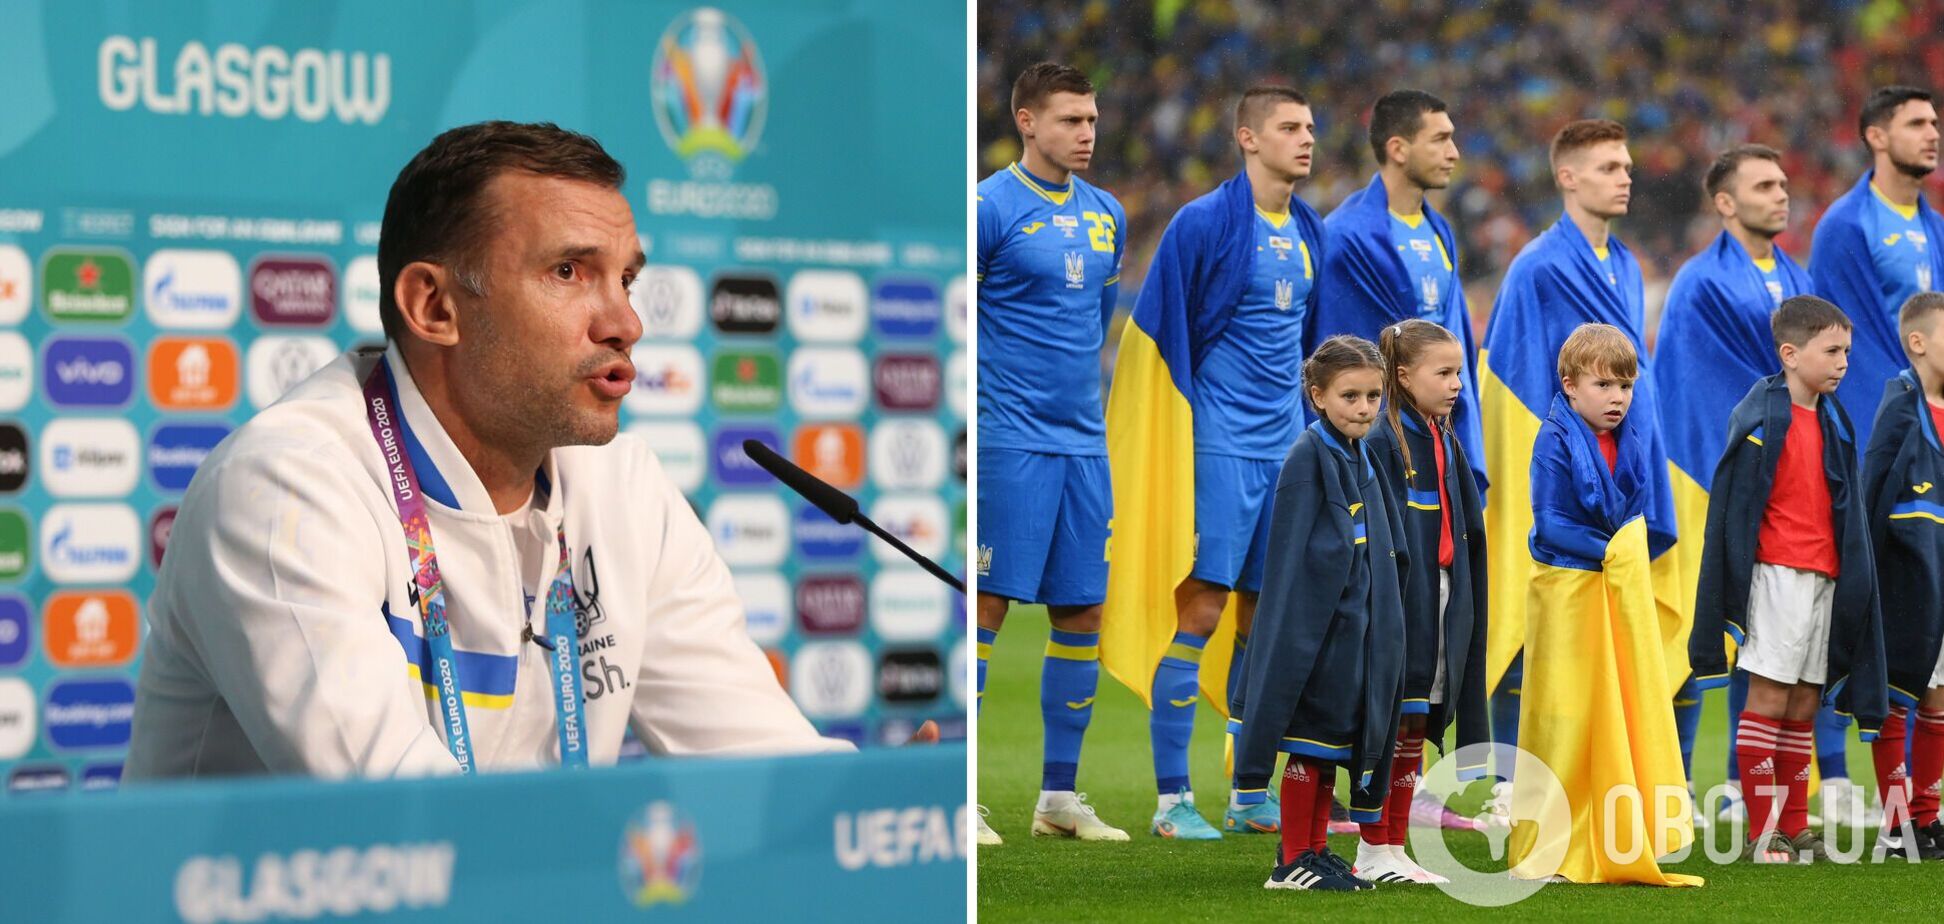 Шевченко отреагировал на поражение сборной Украины от Уэльса